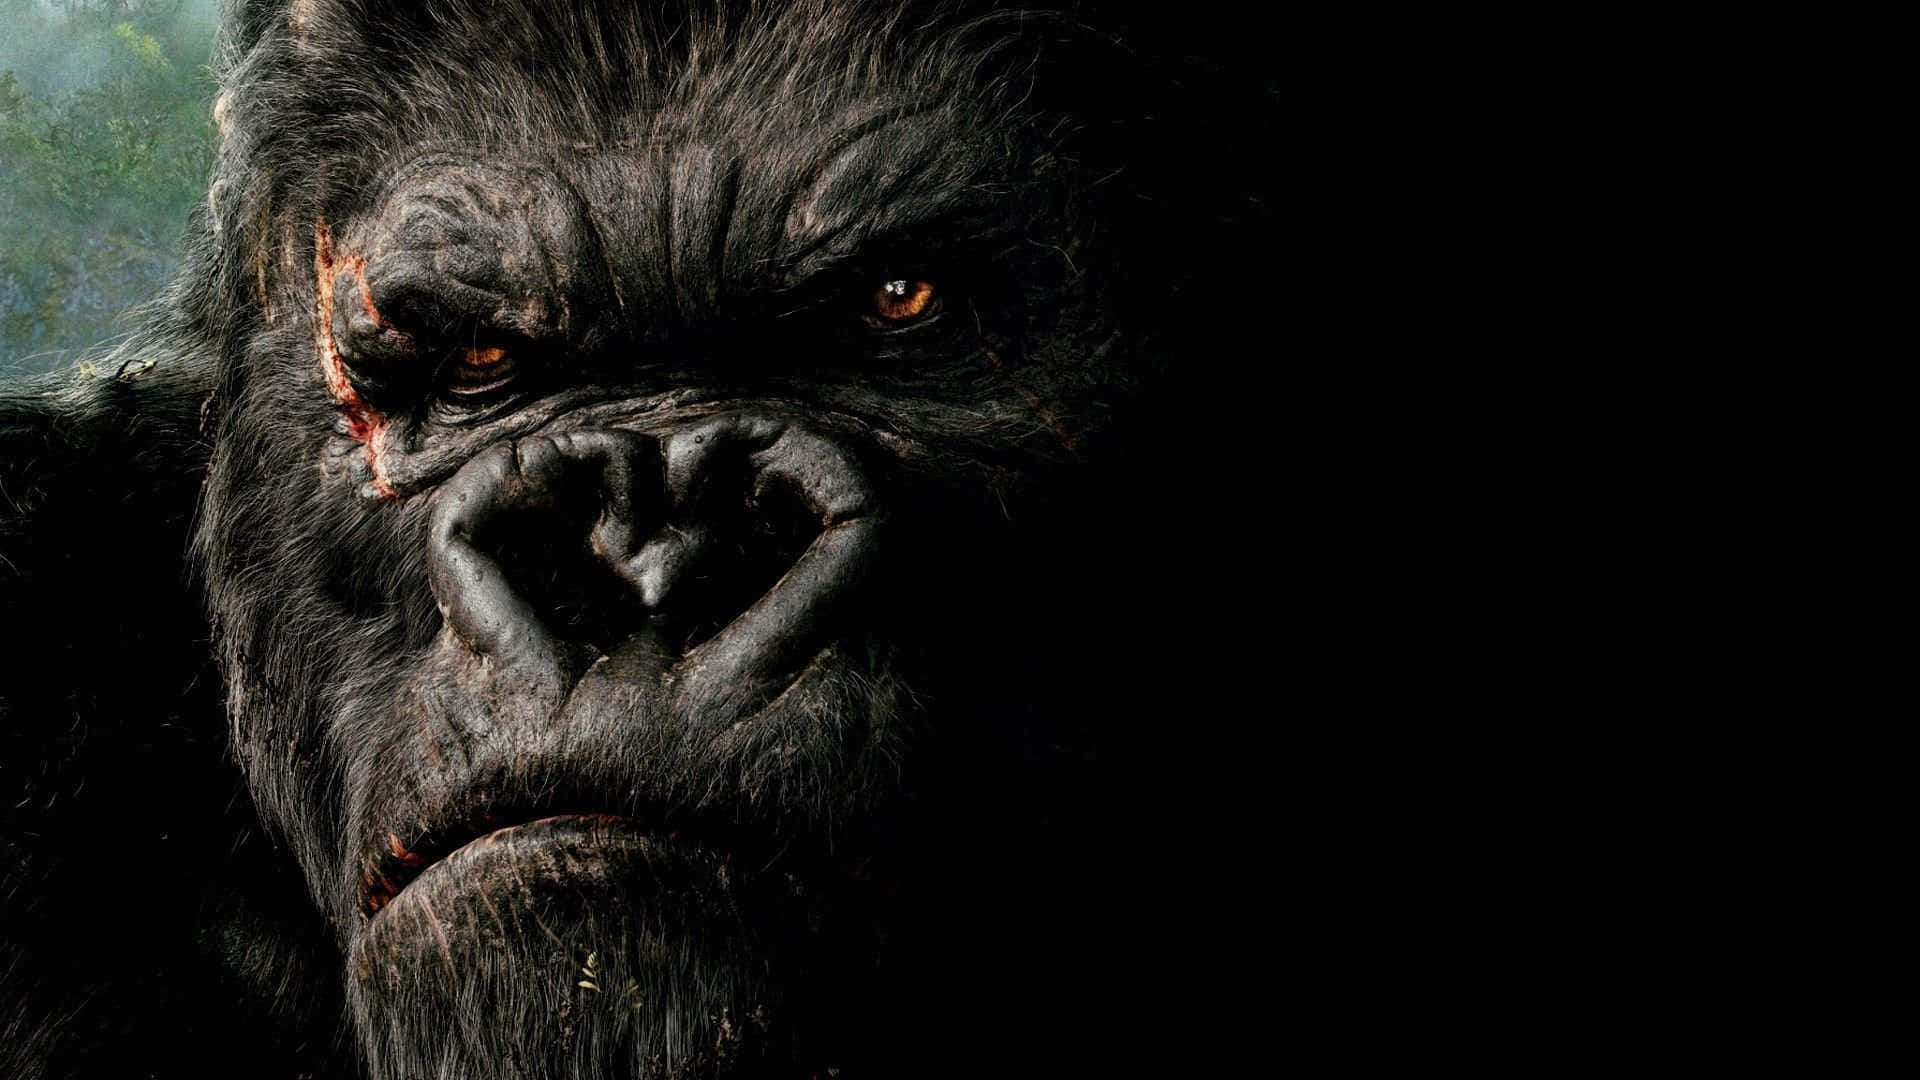 Unaimagen Icónica De King Kong, El Personaje Ficticio Del Gigantesco Simio.